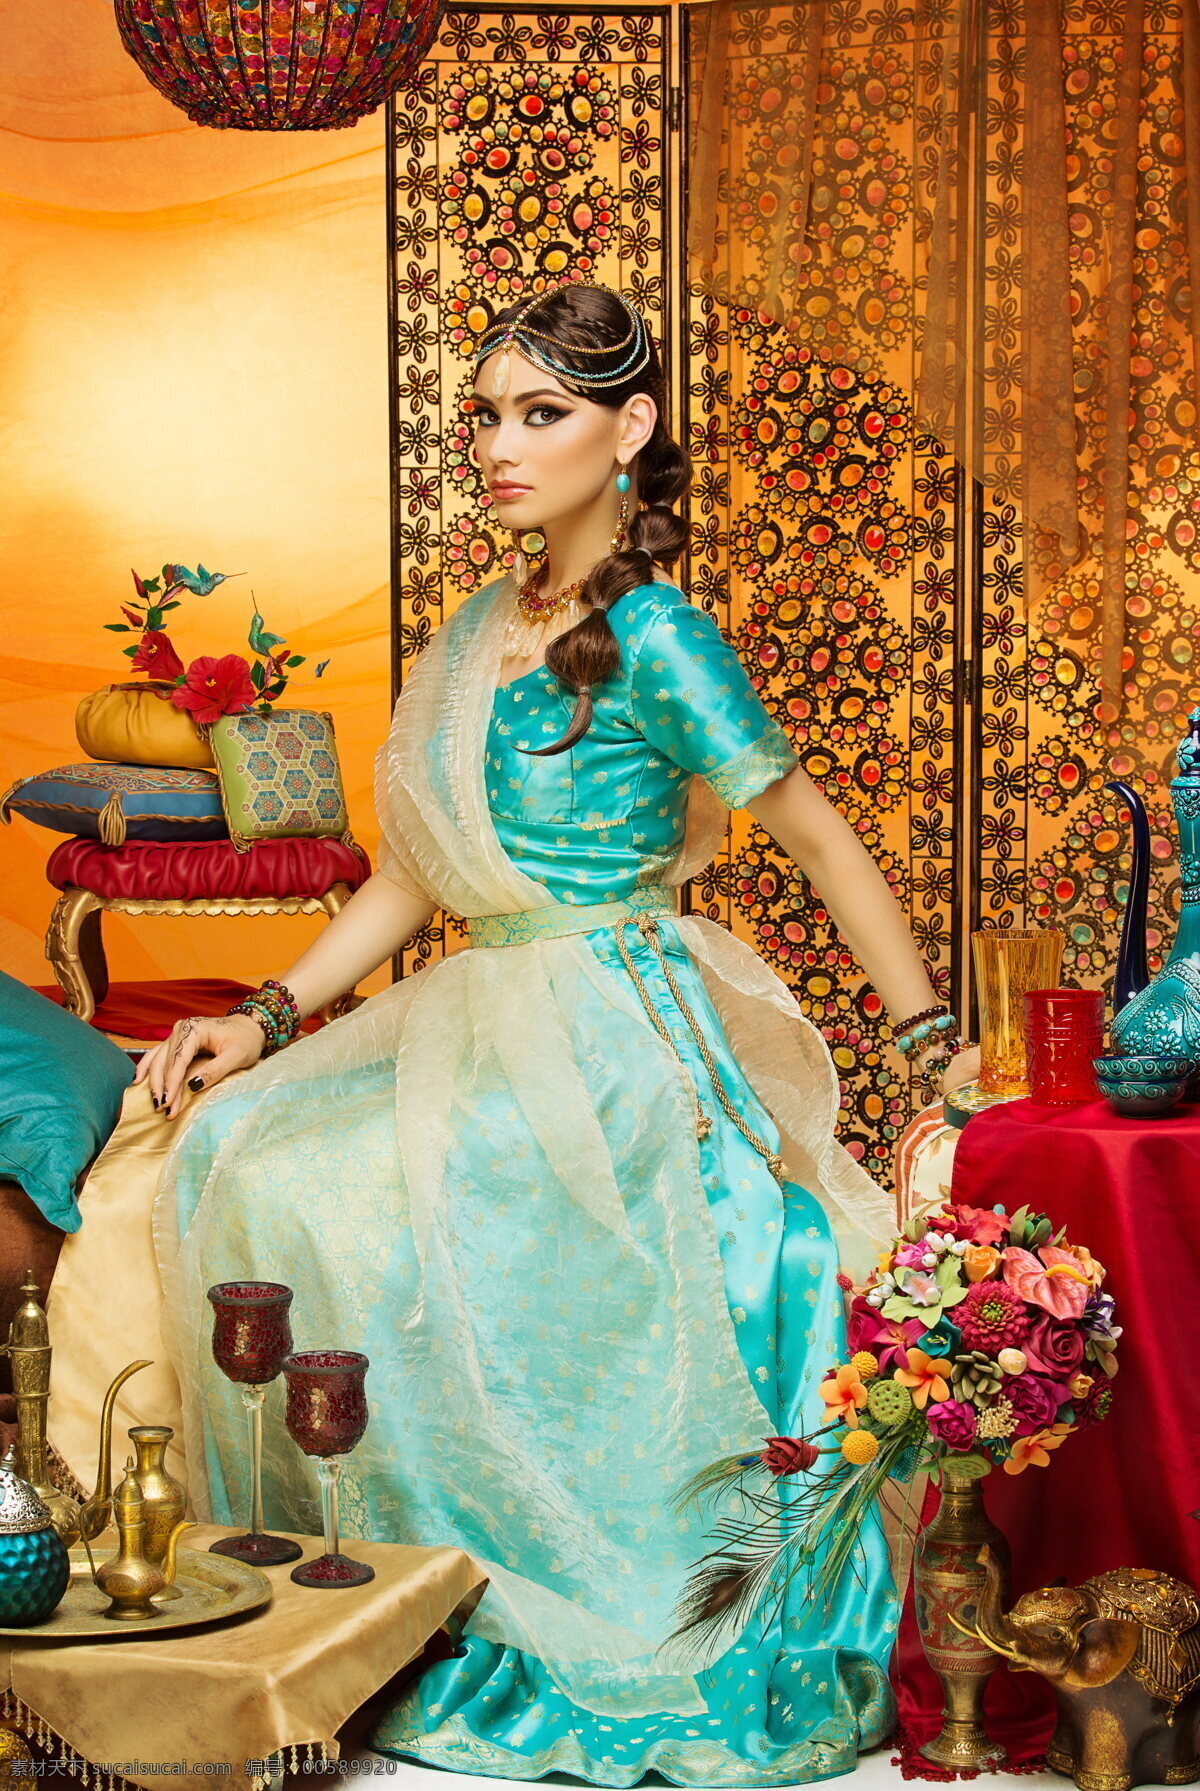 印度美女写真 印度美女 写真 印度装 美女写真 异国风情 印度